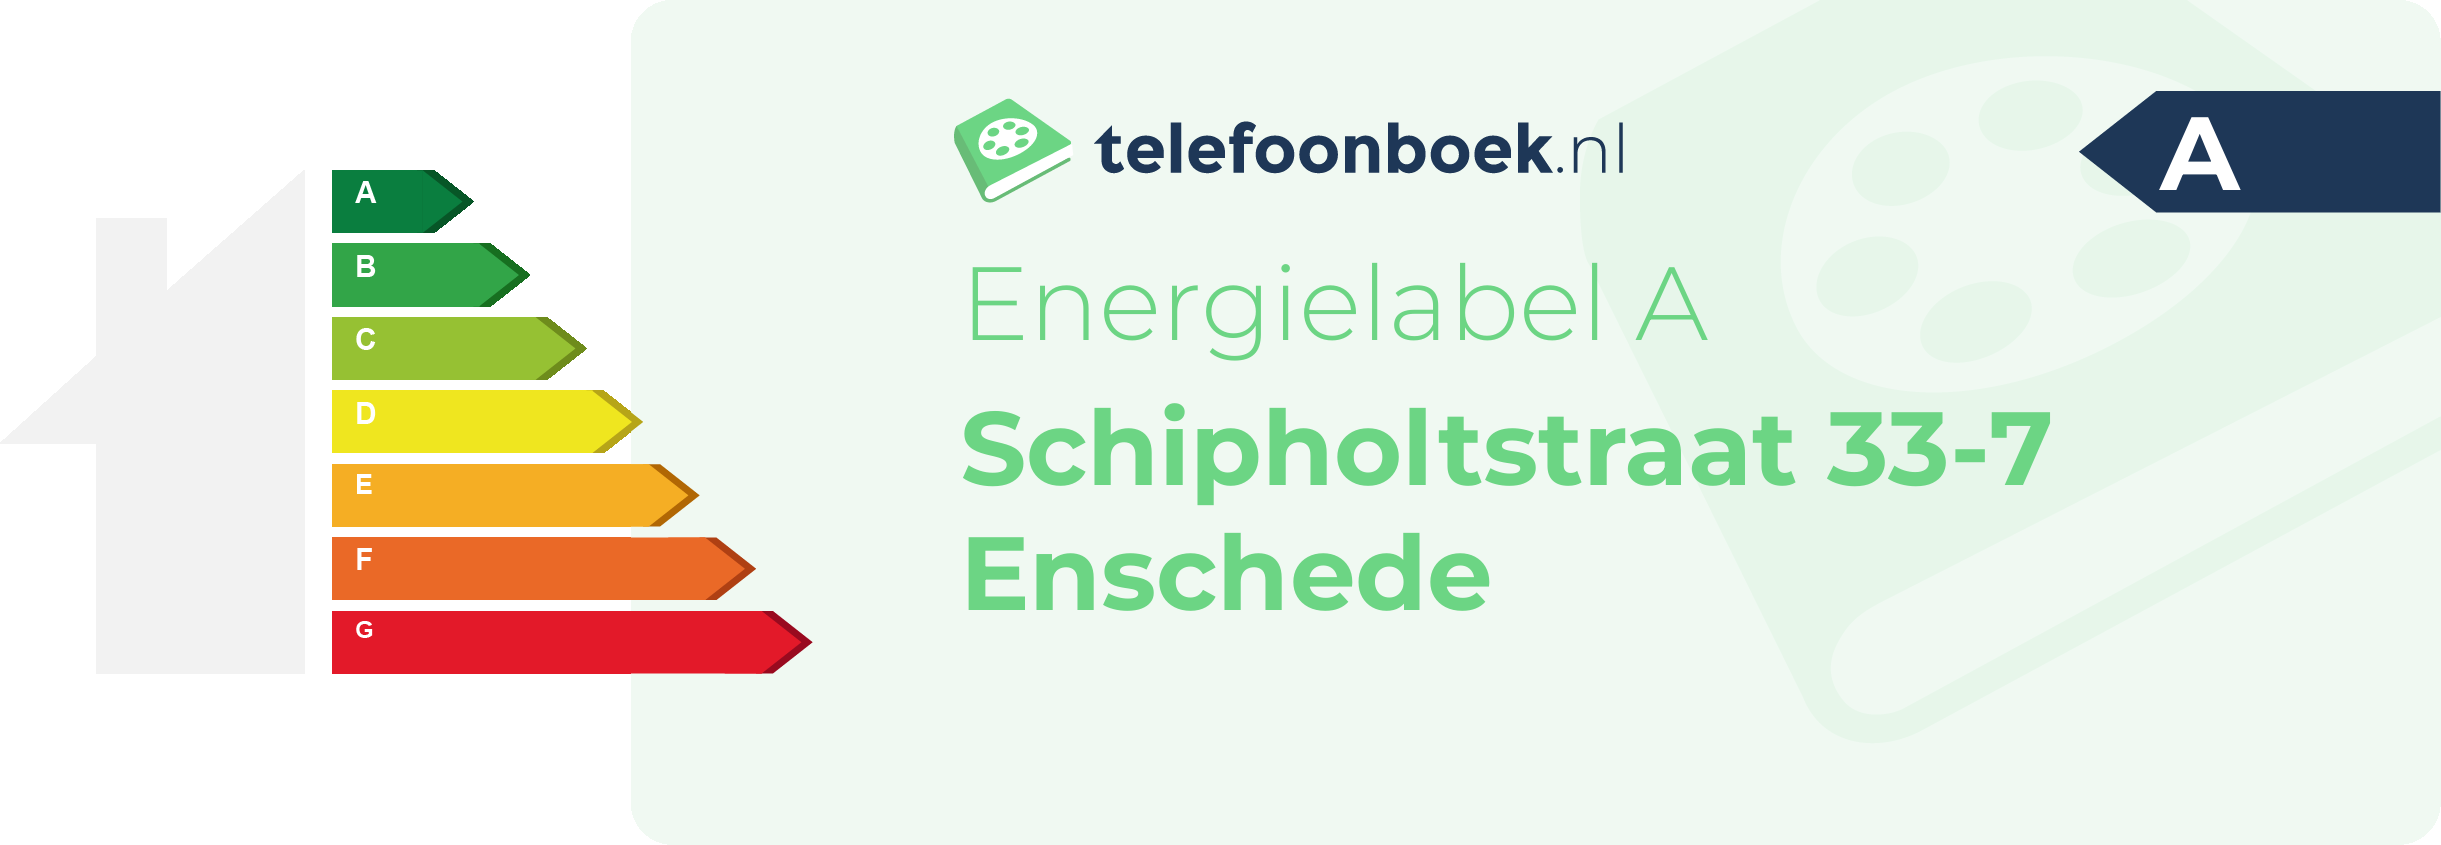 Energielabel Schipholtstraat 33-7 Enschede